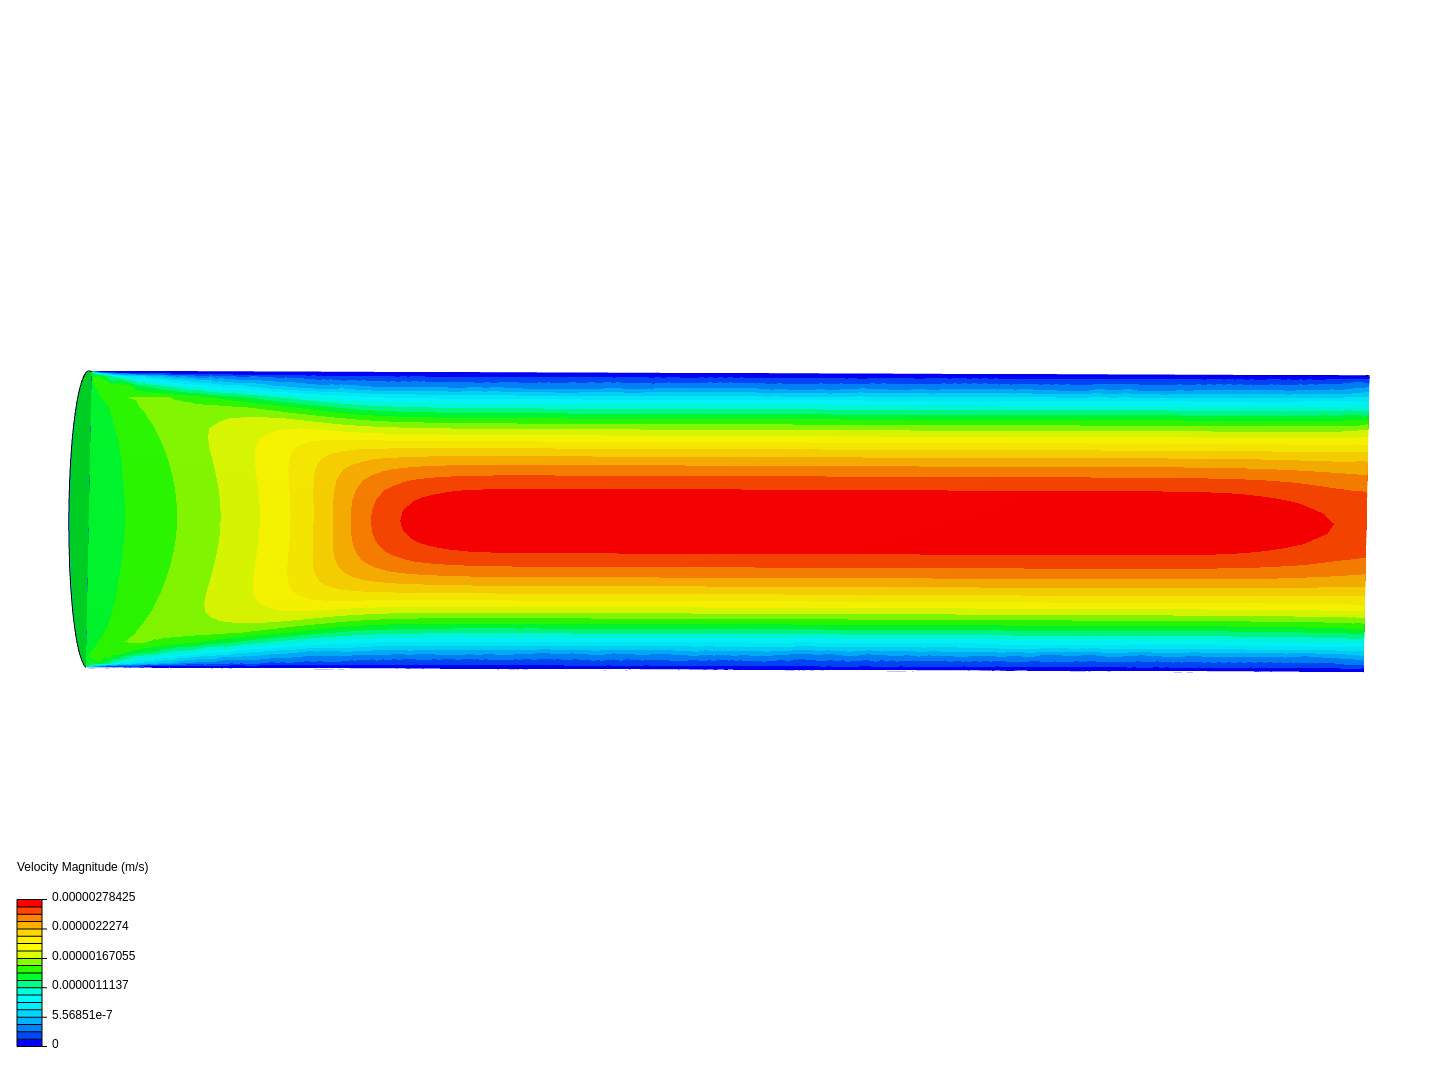 quartz tube steady state image